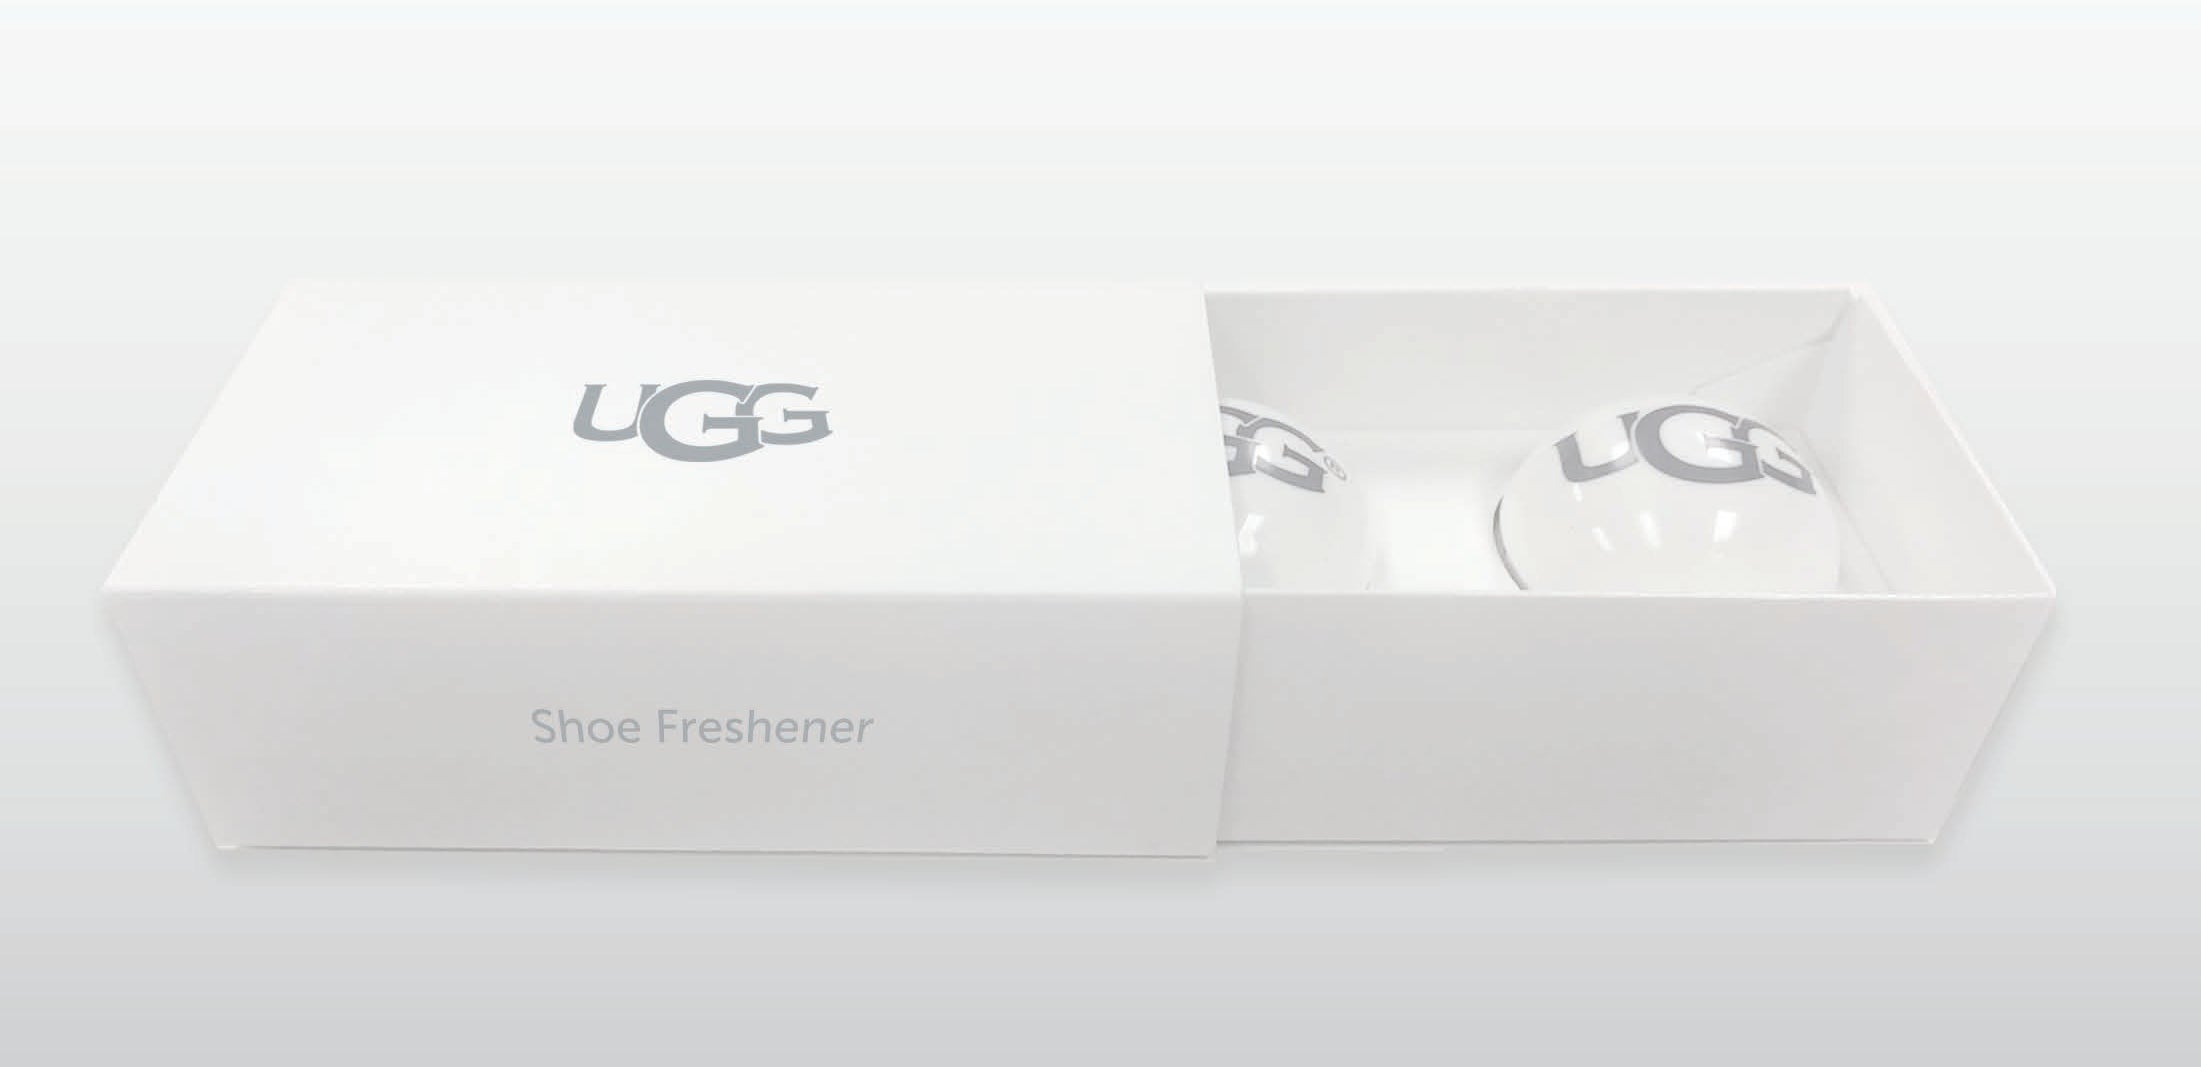 UGG Shoe Freshener